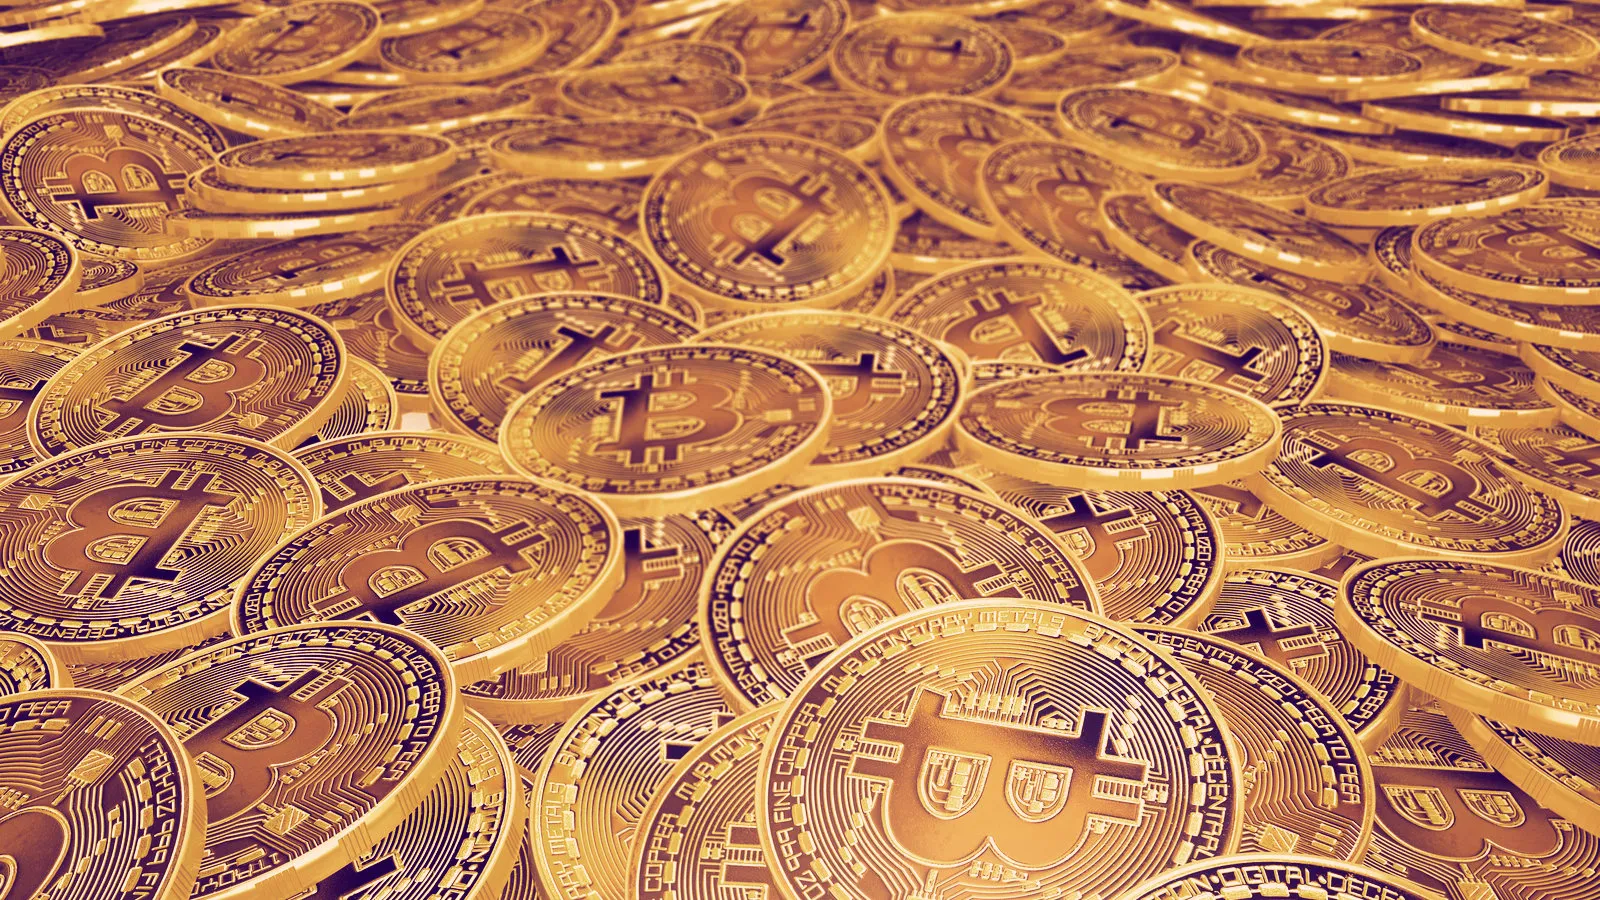 Bitcoin, bitcoin, bitcoin! Image: Shutterstock